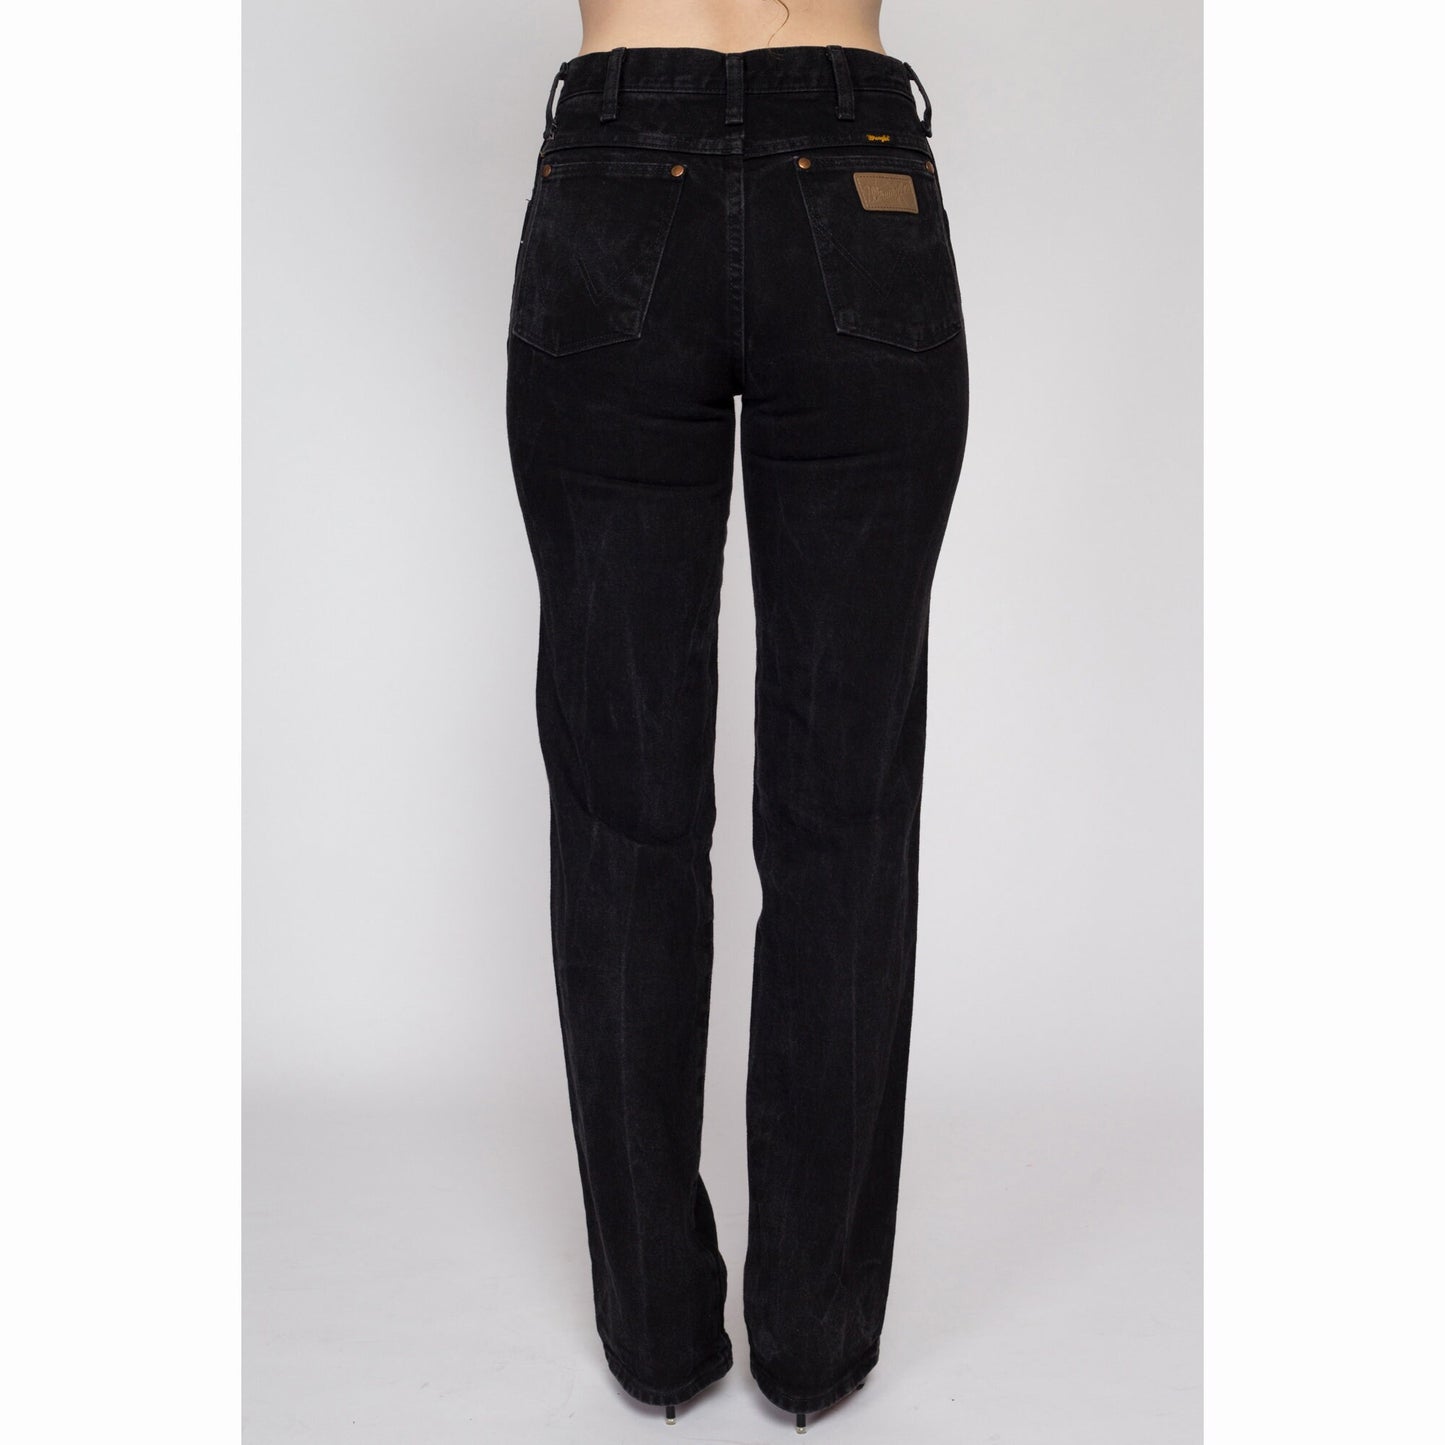 Black Wrangler Jeans 28x30.5 – NOIROHIO VINTAGE